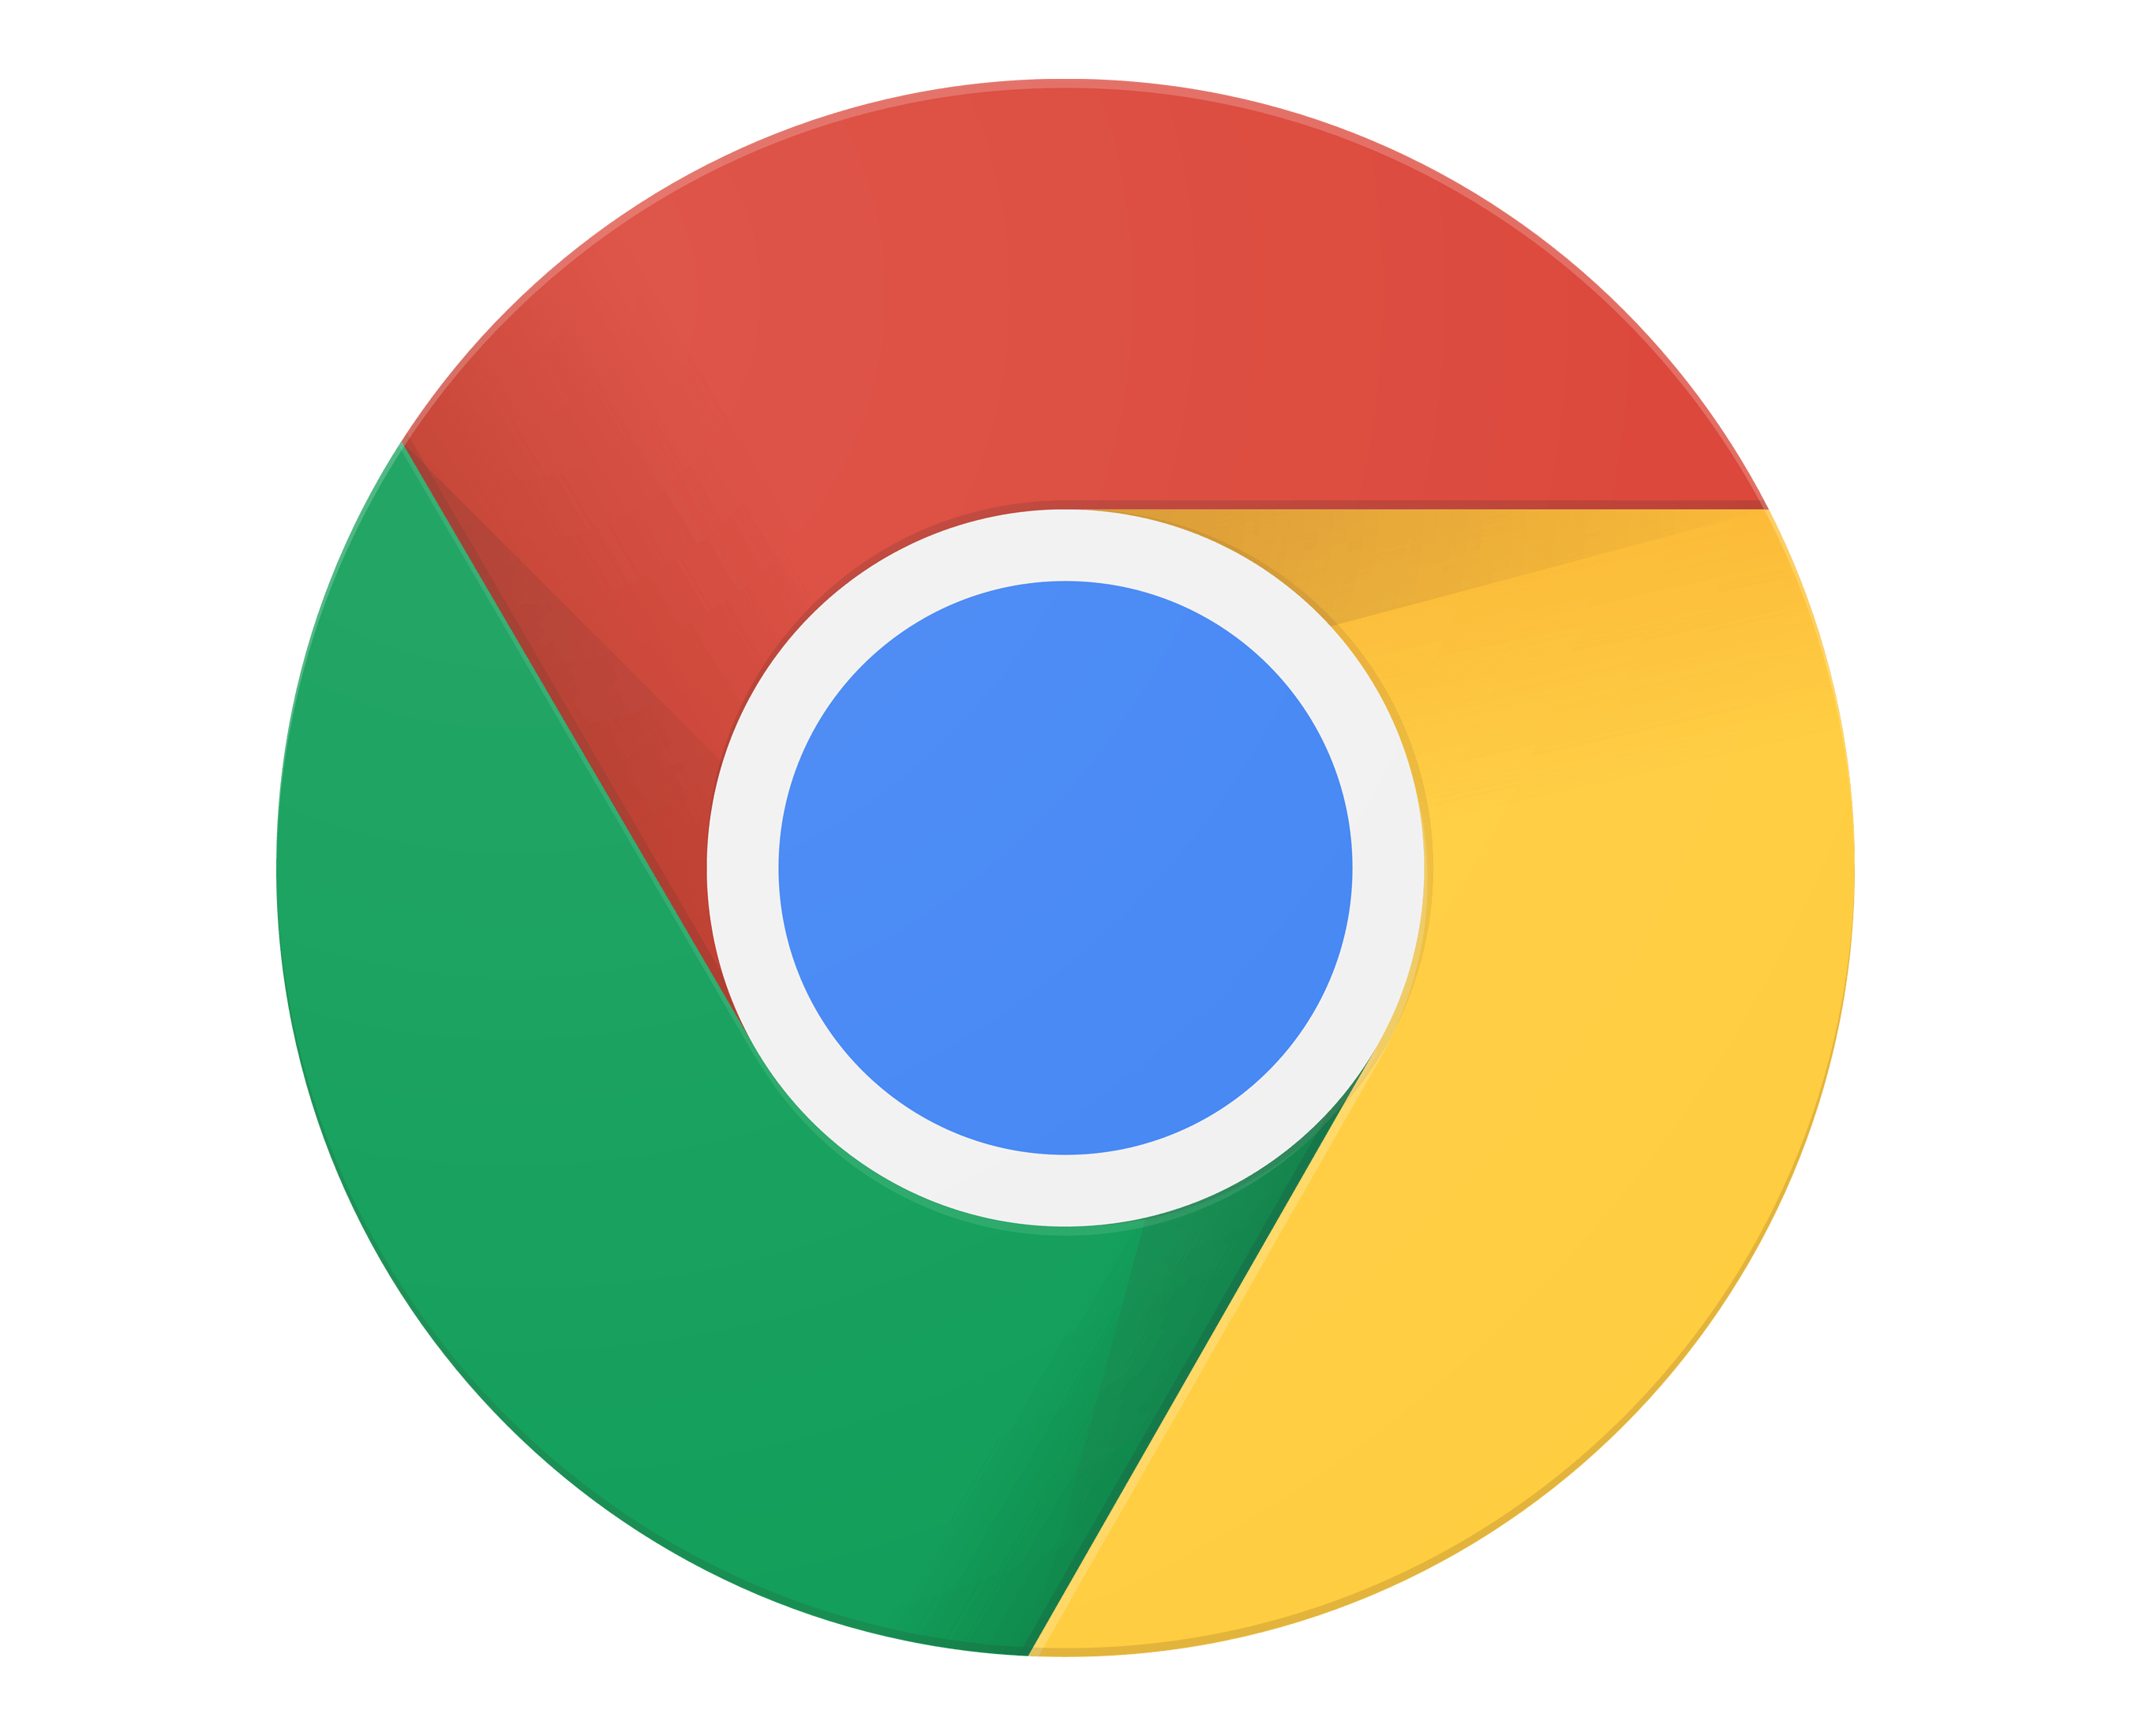 Chrome Logo - Chrome Logo, Chrome Symbol, Meaning, History and Evolution